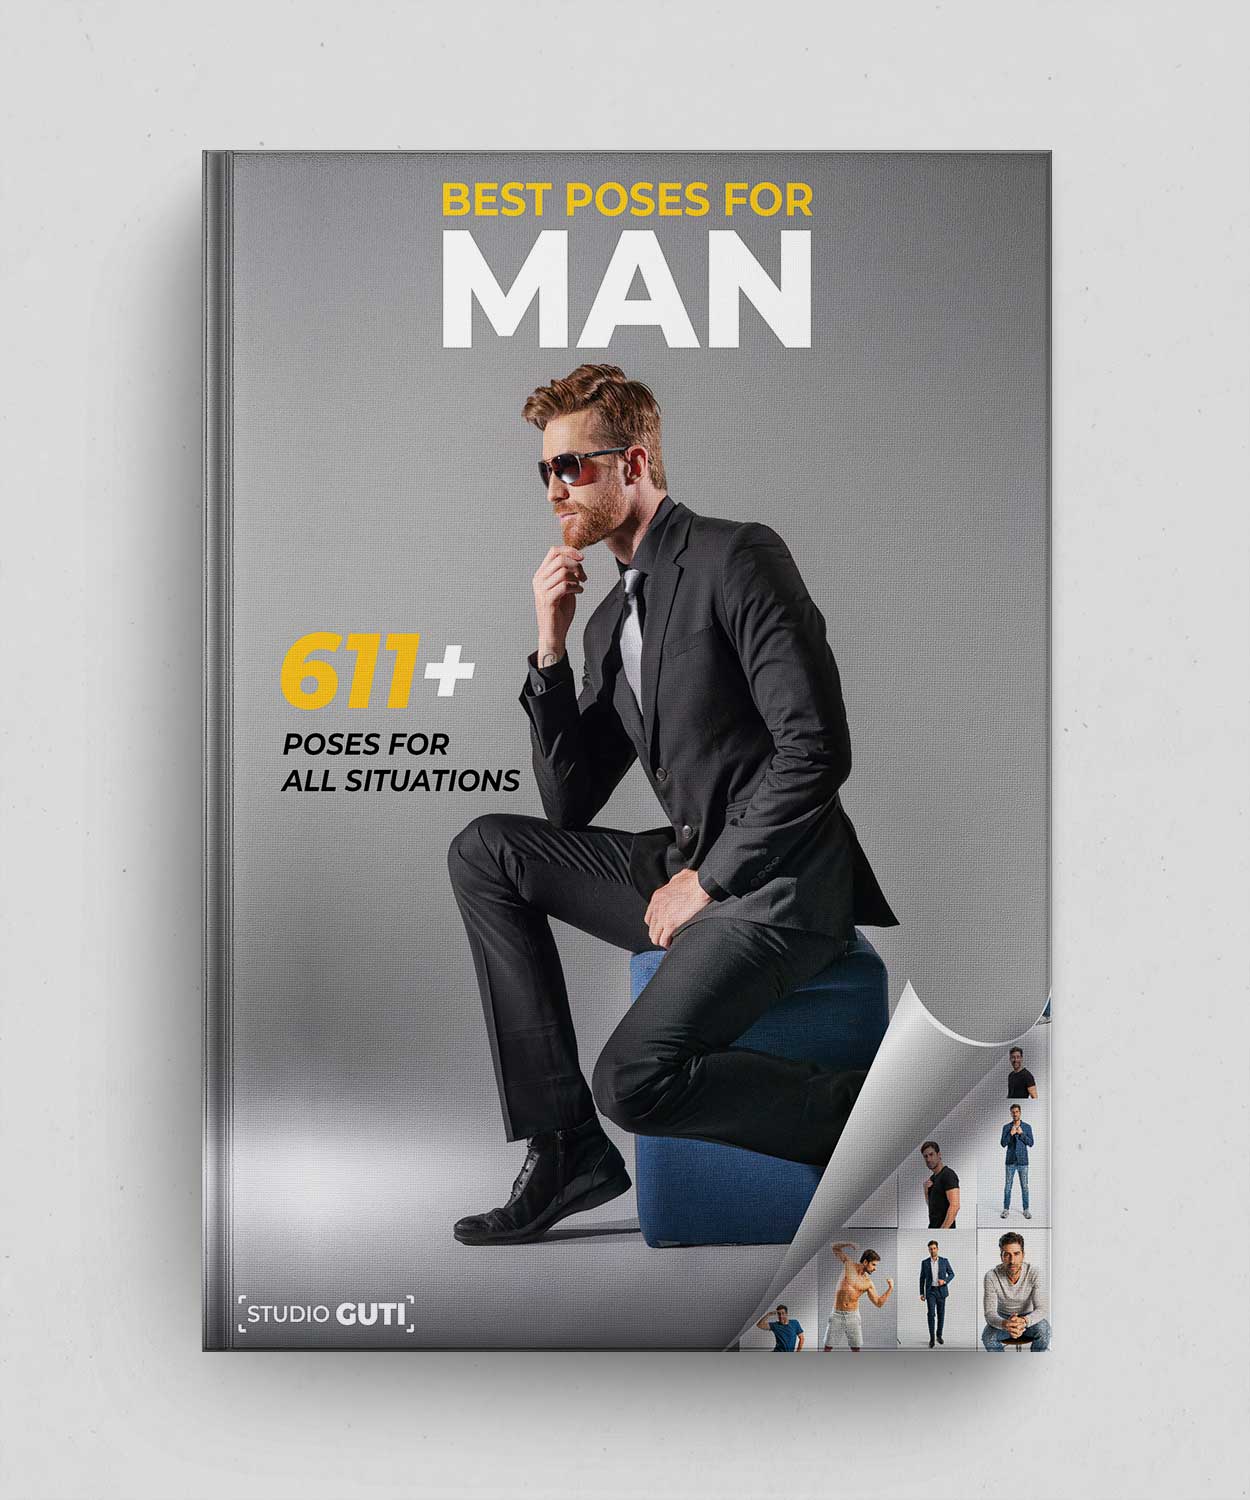 Die besten 611 Posen für den Mann – Digitales Buch